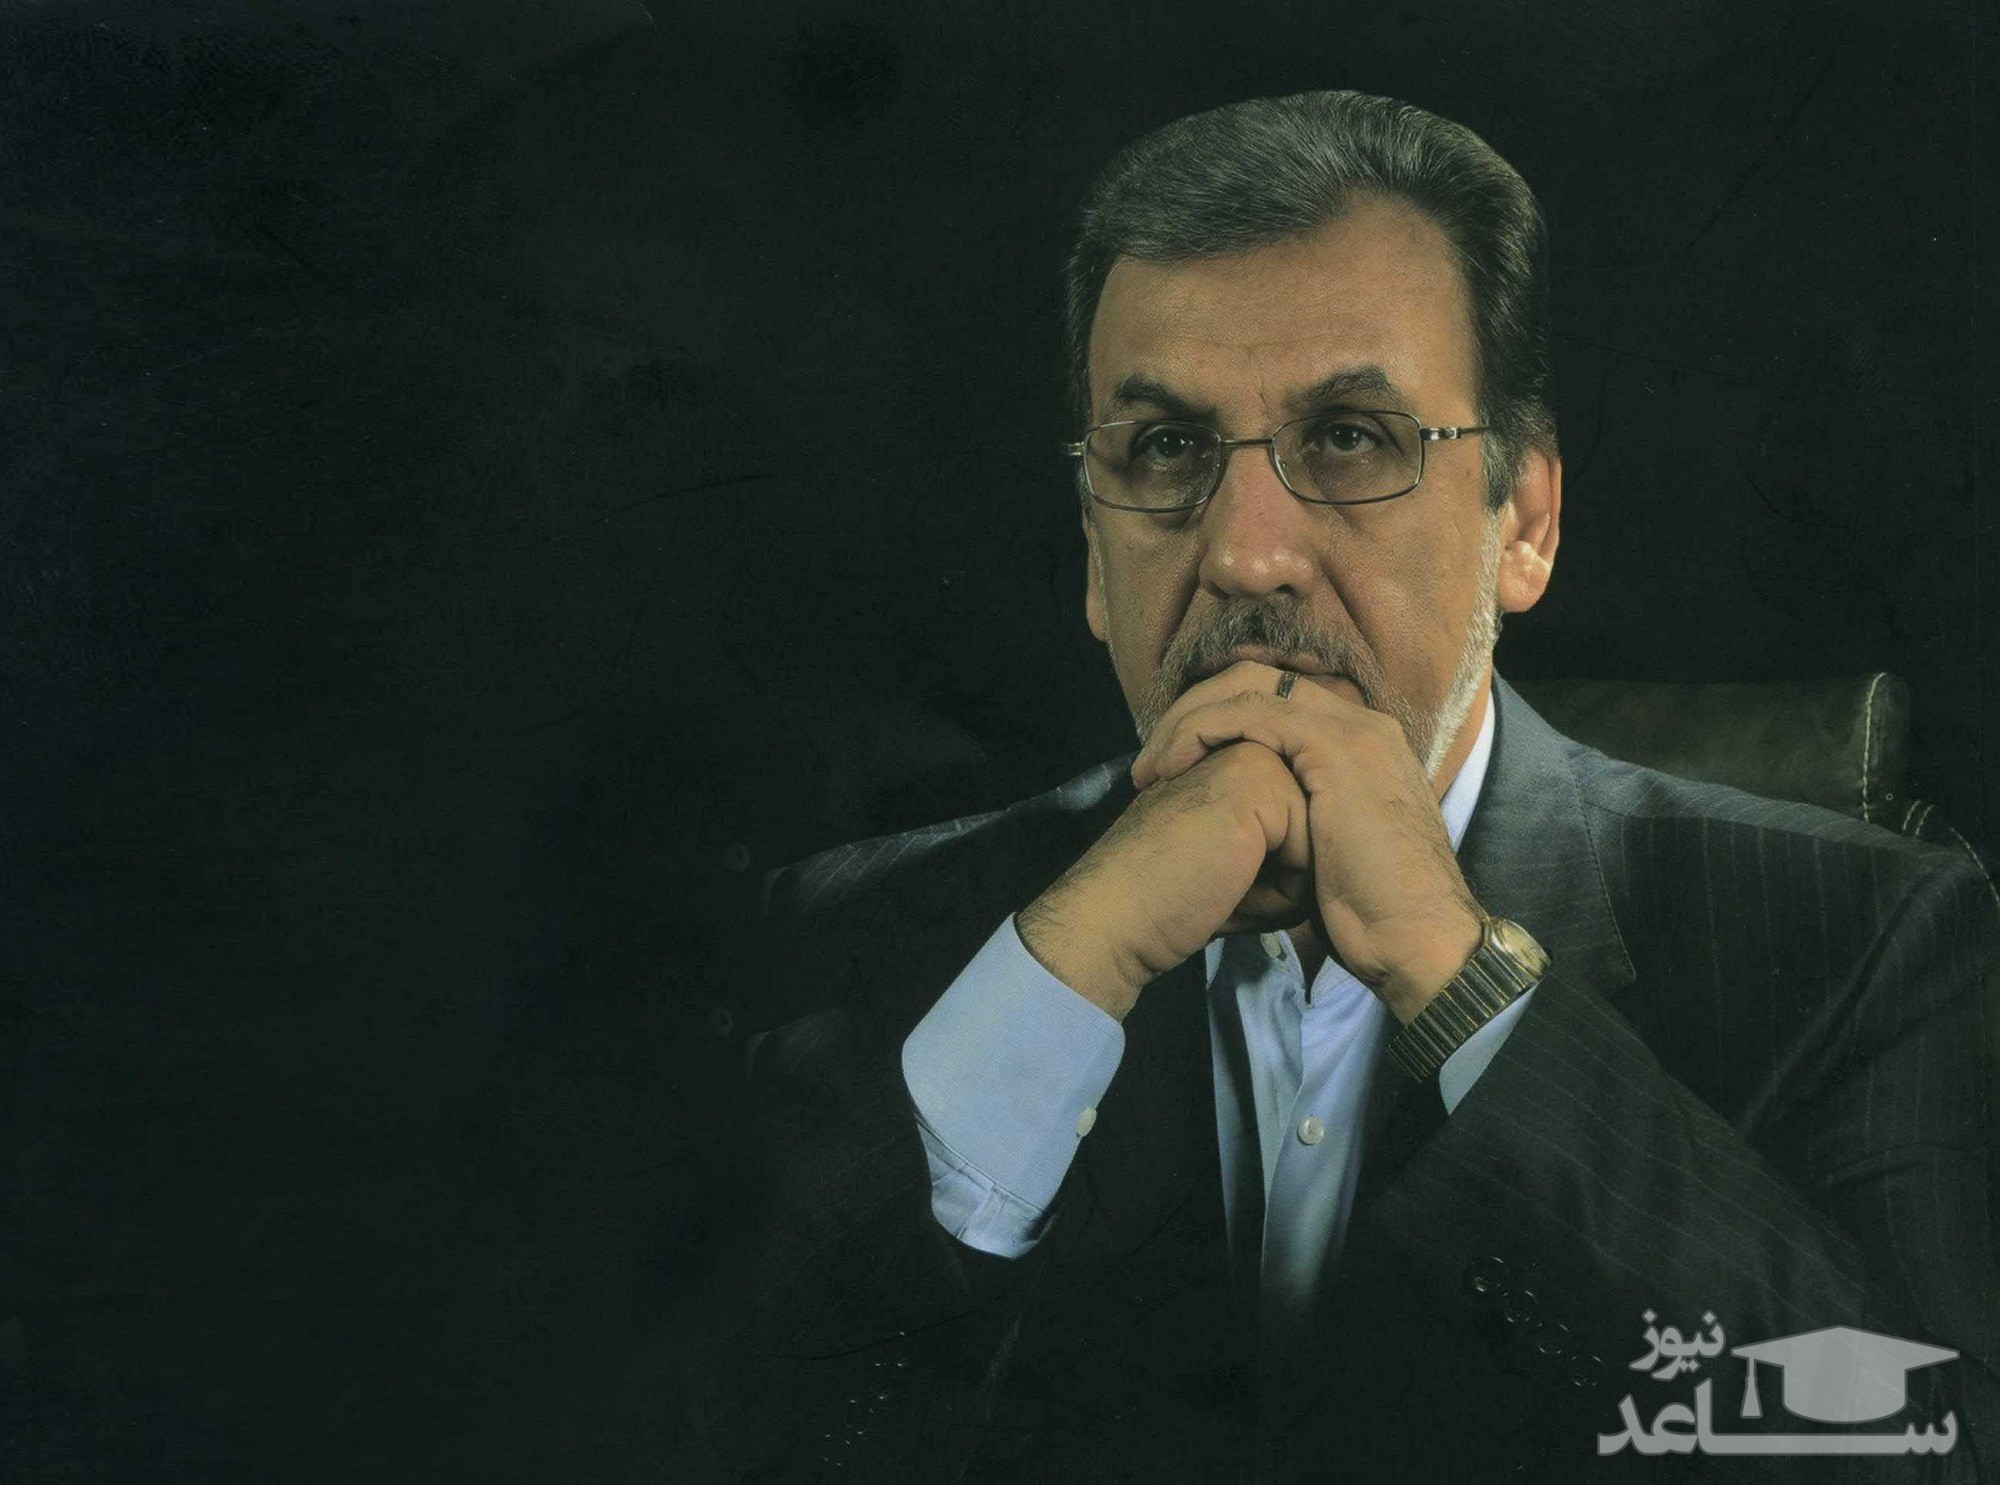 (عکس) جدیدترین تصویر از محمود خاوری